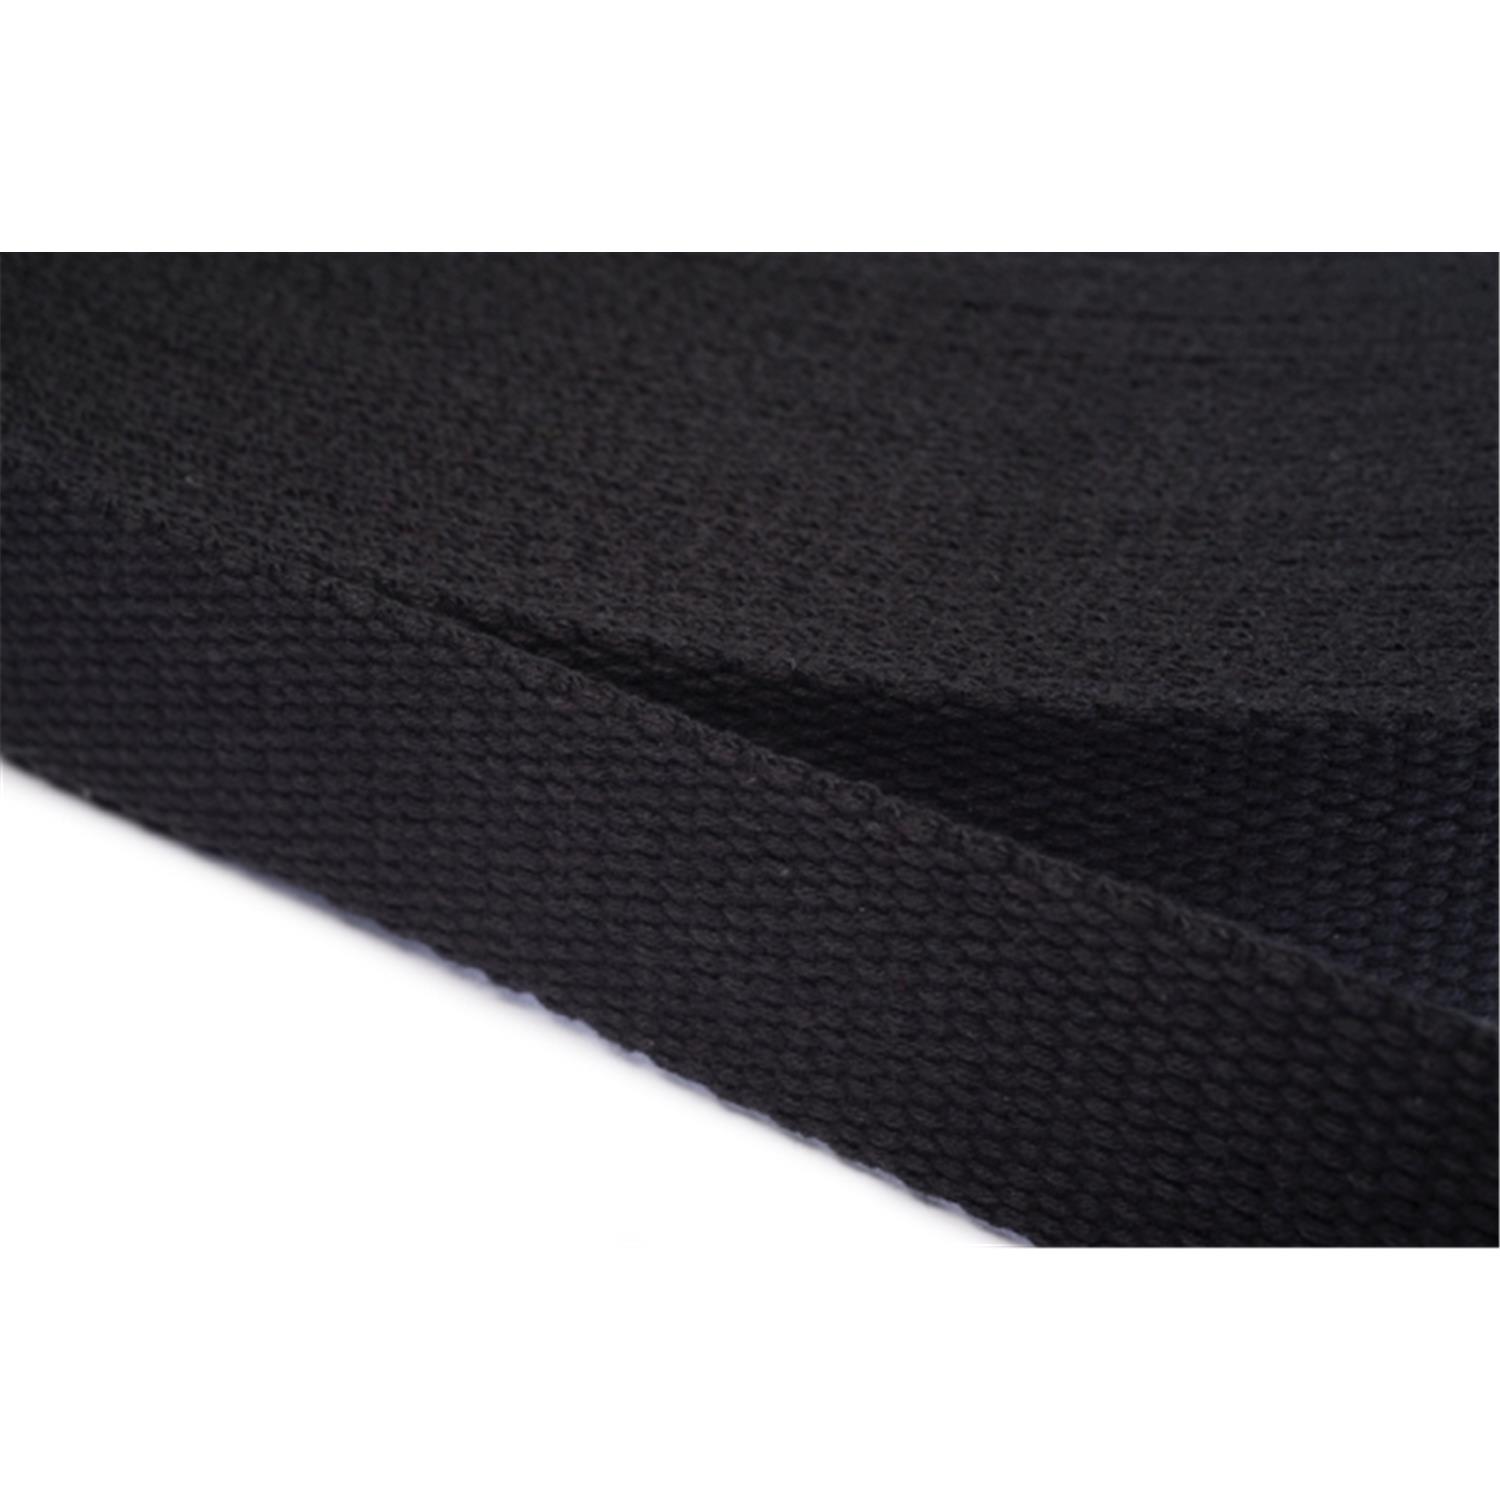 Gurtband aus Baumwolle 25mm in 20 Farben 20 - schwarz 6 Meter